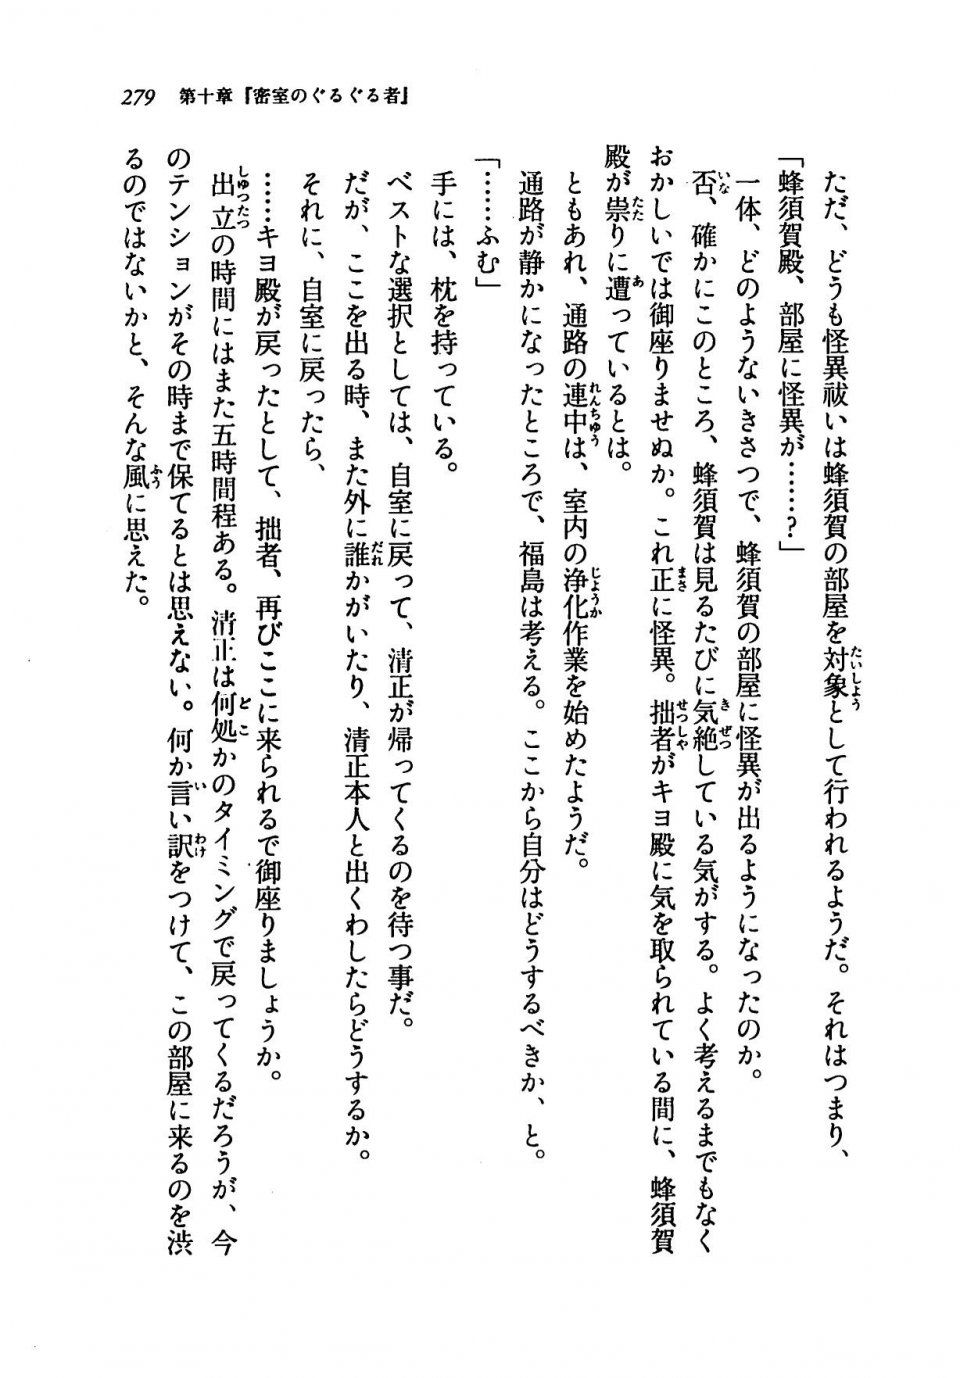 Kyoukai Senjou no Horizon LN Vol 19(8A) - Photo #279